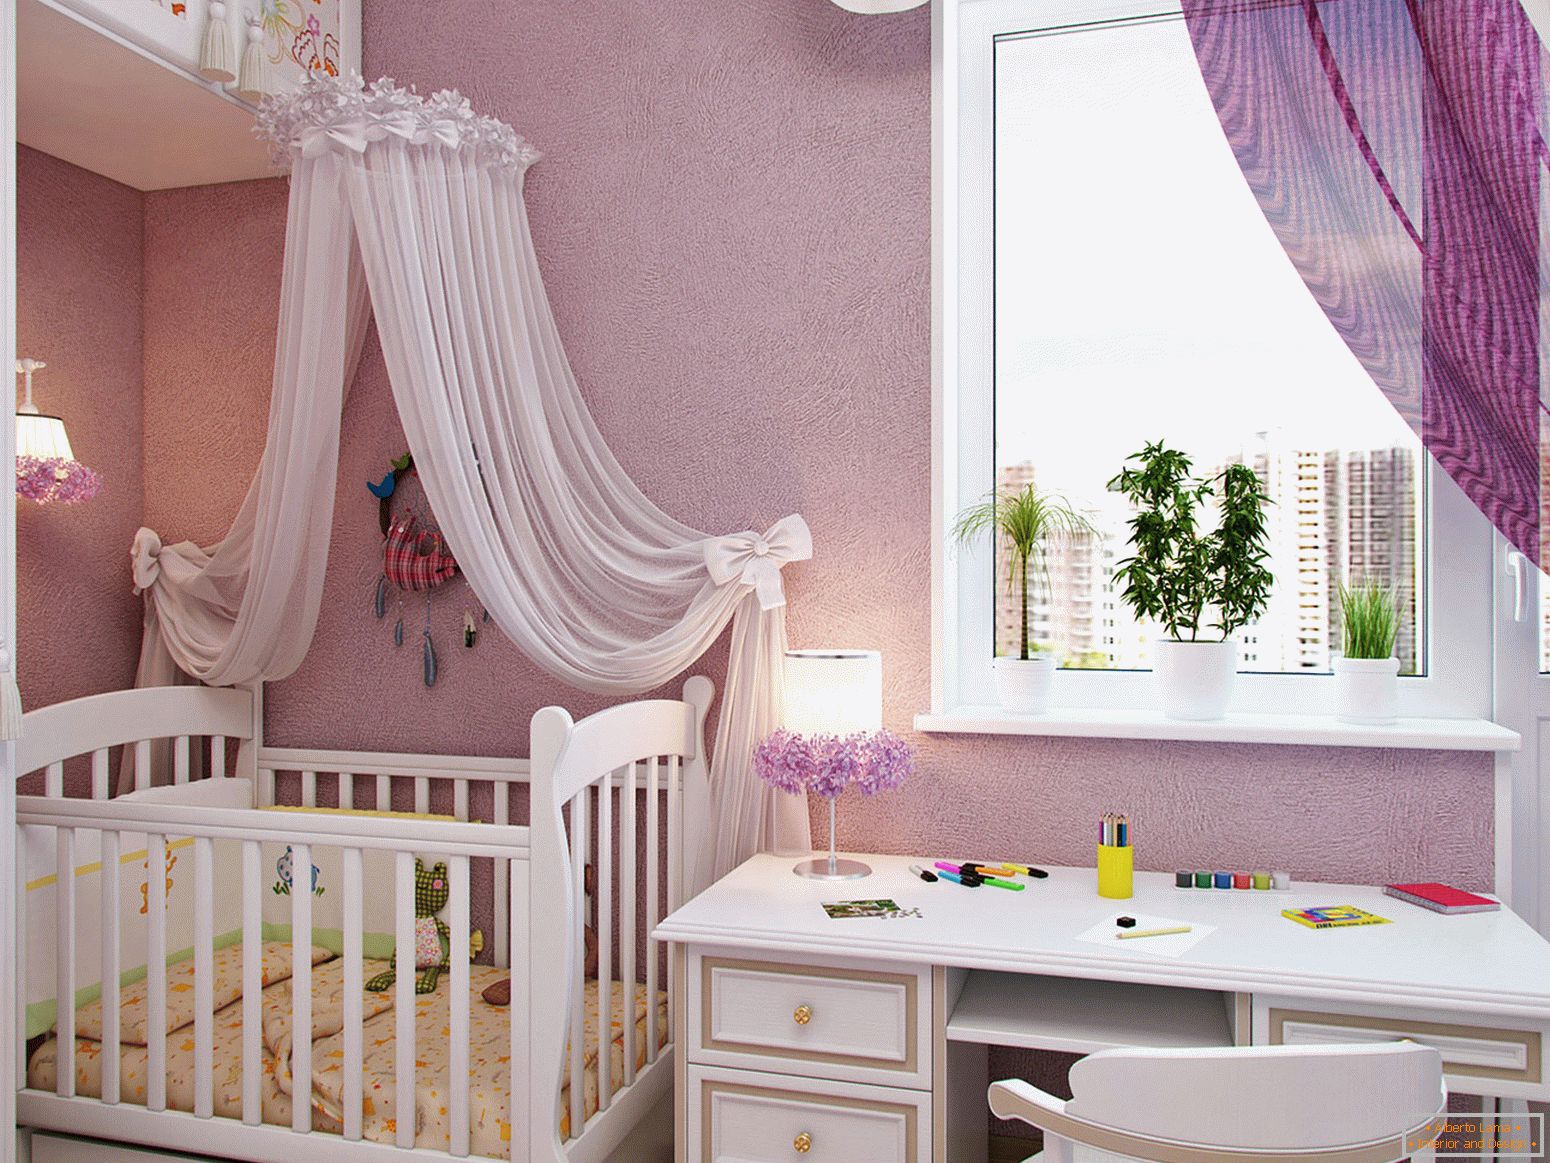 Schönes Design eines kleinen Kinderzimmers